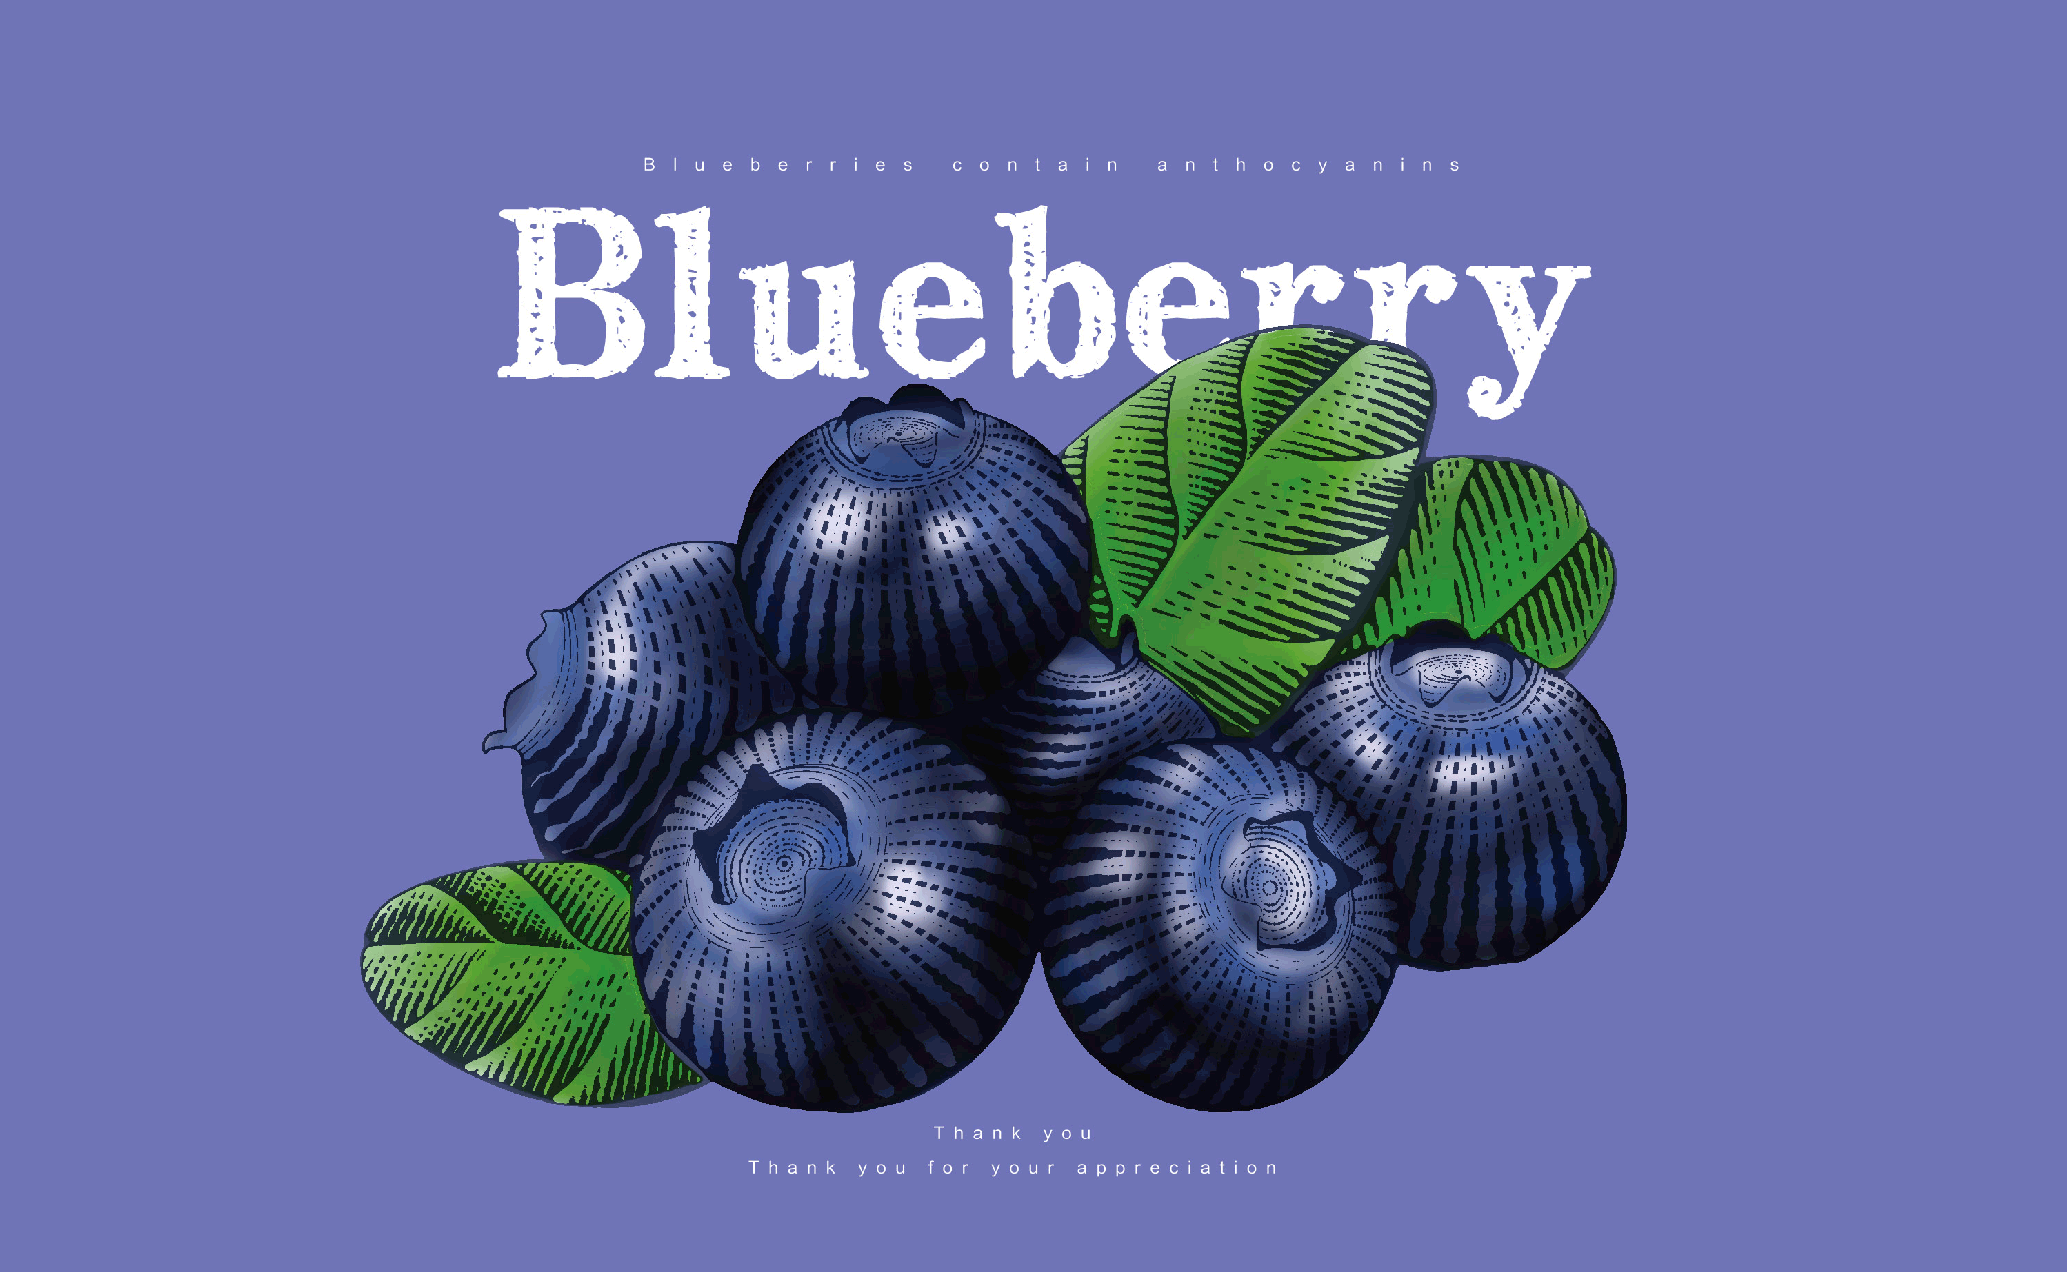 复古风系列-蓝莓